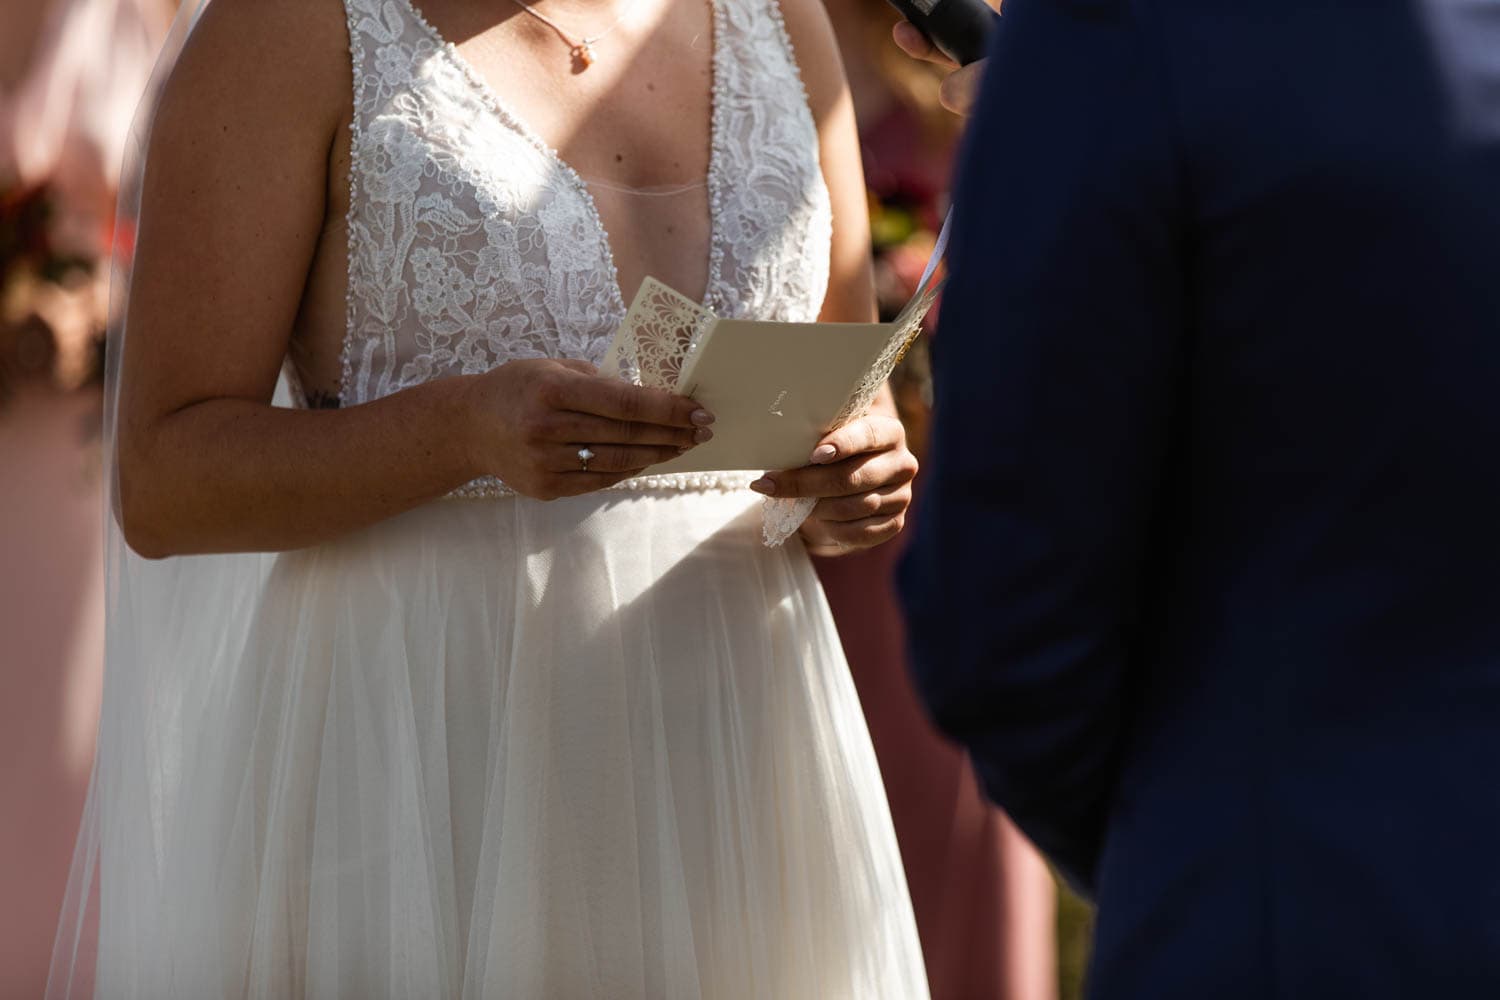 bride reading vows at wedding ceremony